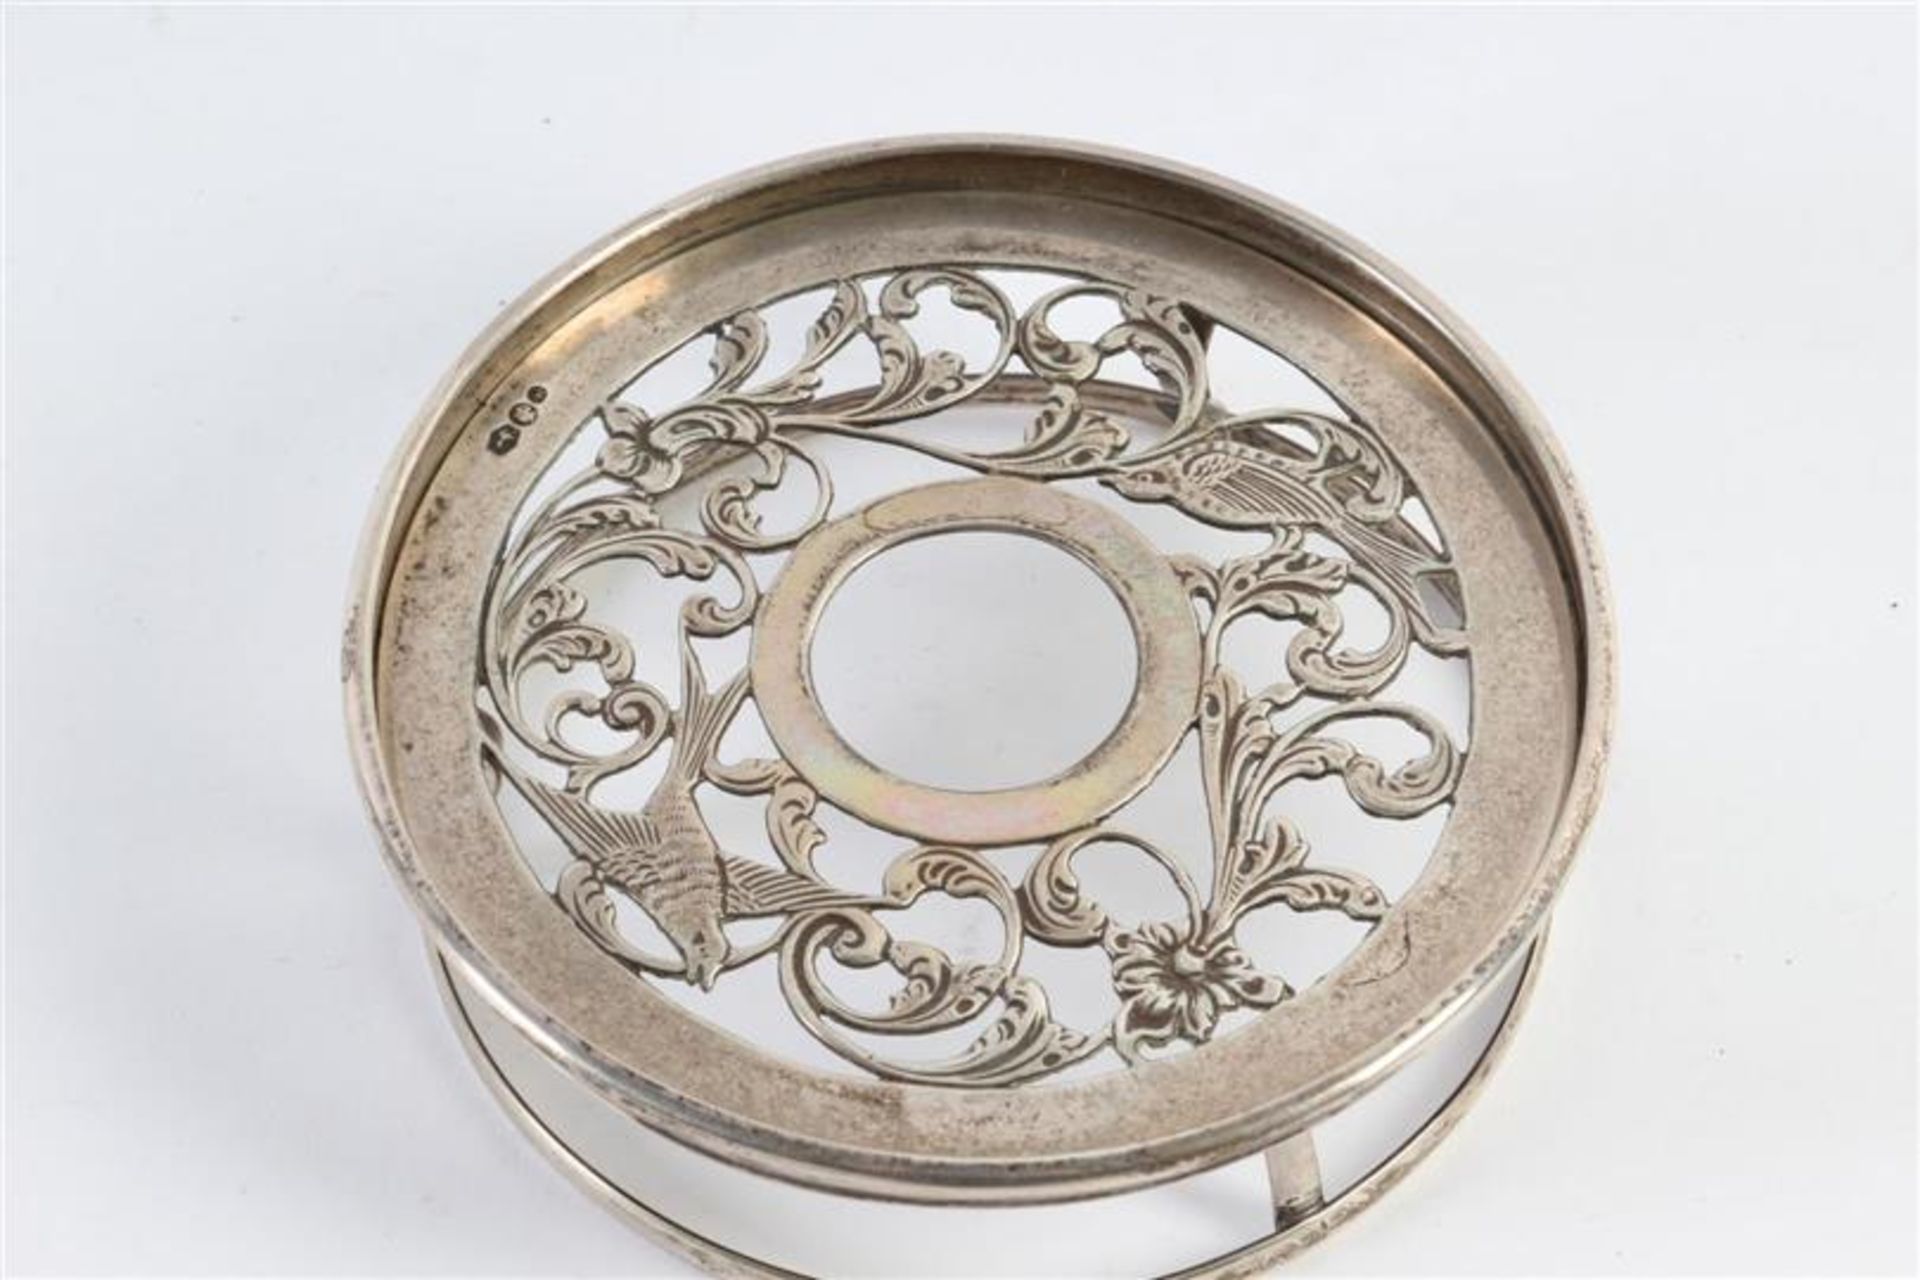 Zilveren comfoor, melkkannetje en lepelvaasje, alle Hollands gekeurd. Gewicht: 543 g. - Bild 7 aus 9